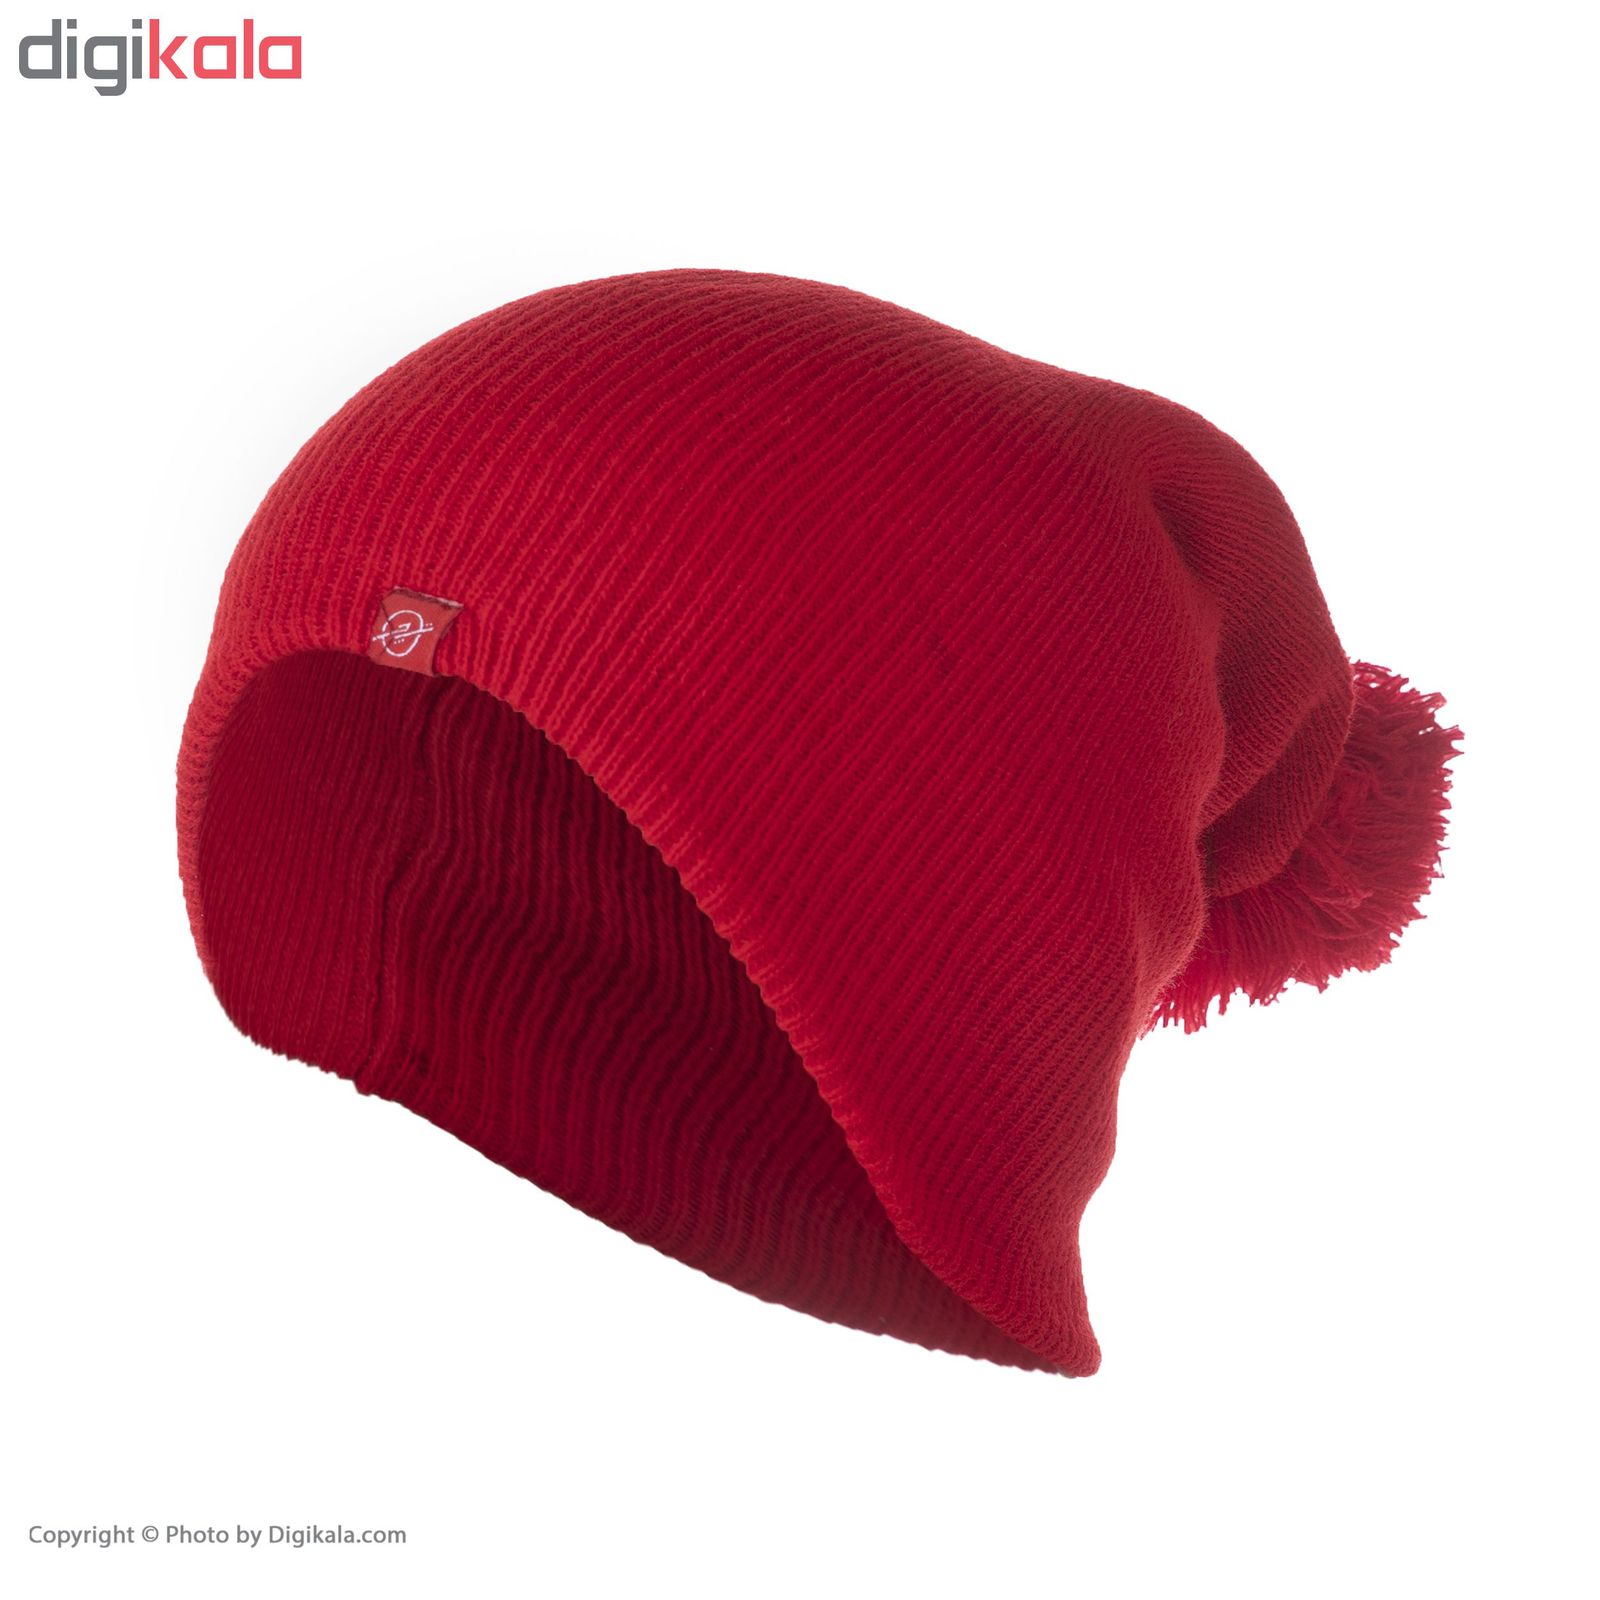 کلاه تچر مدل 2013116 - قرمز - 2